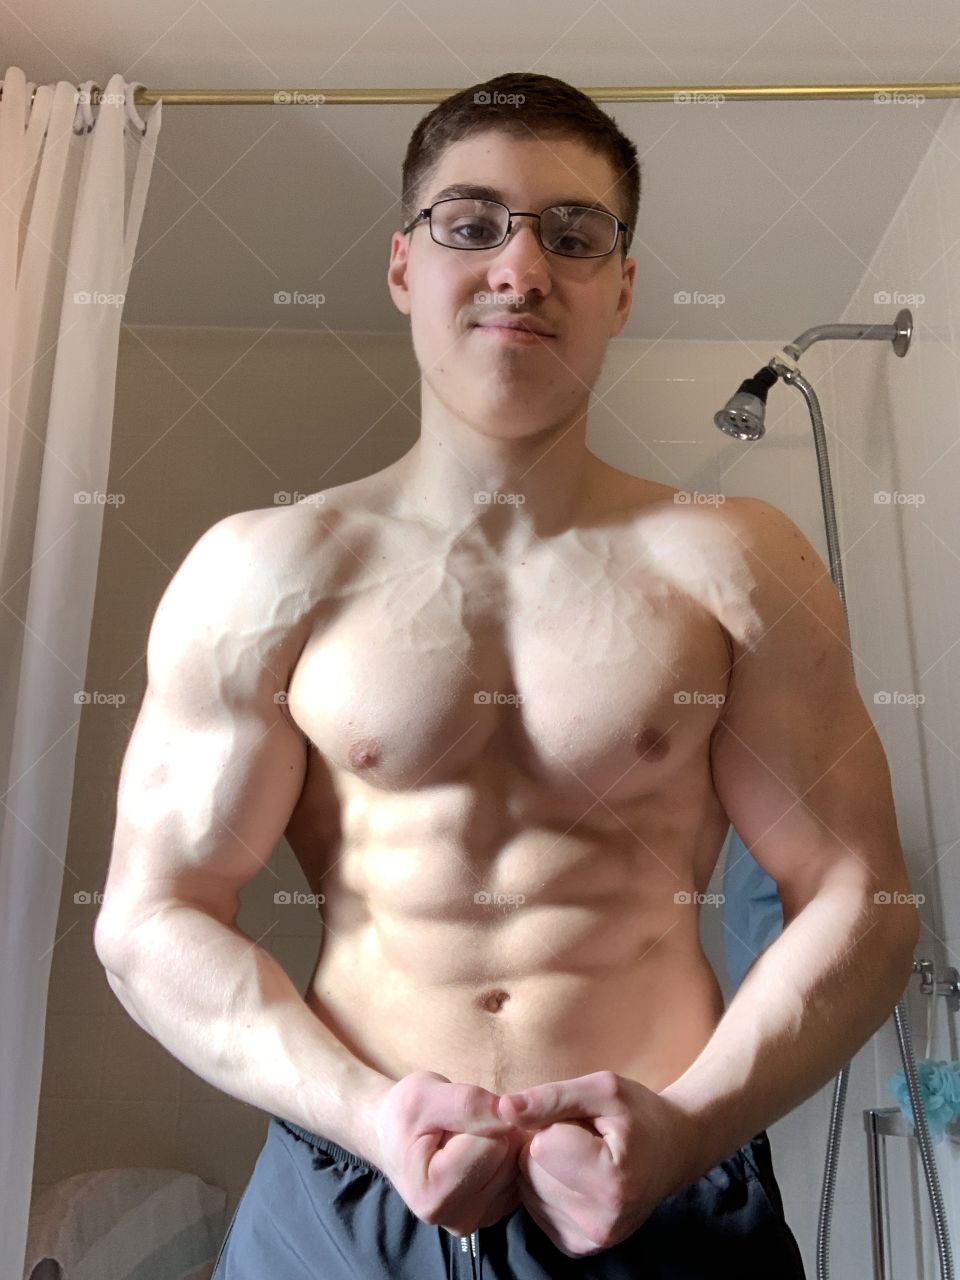 Teen bodybuilder 